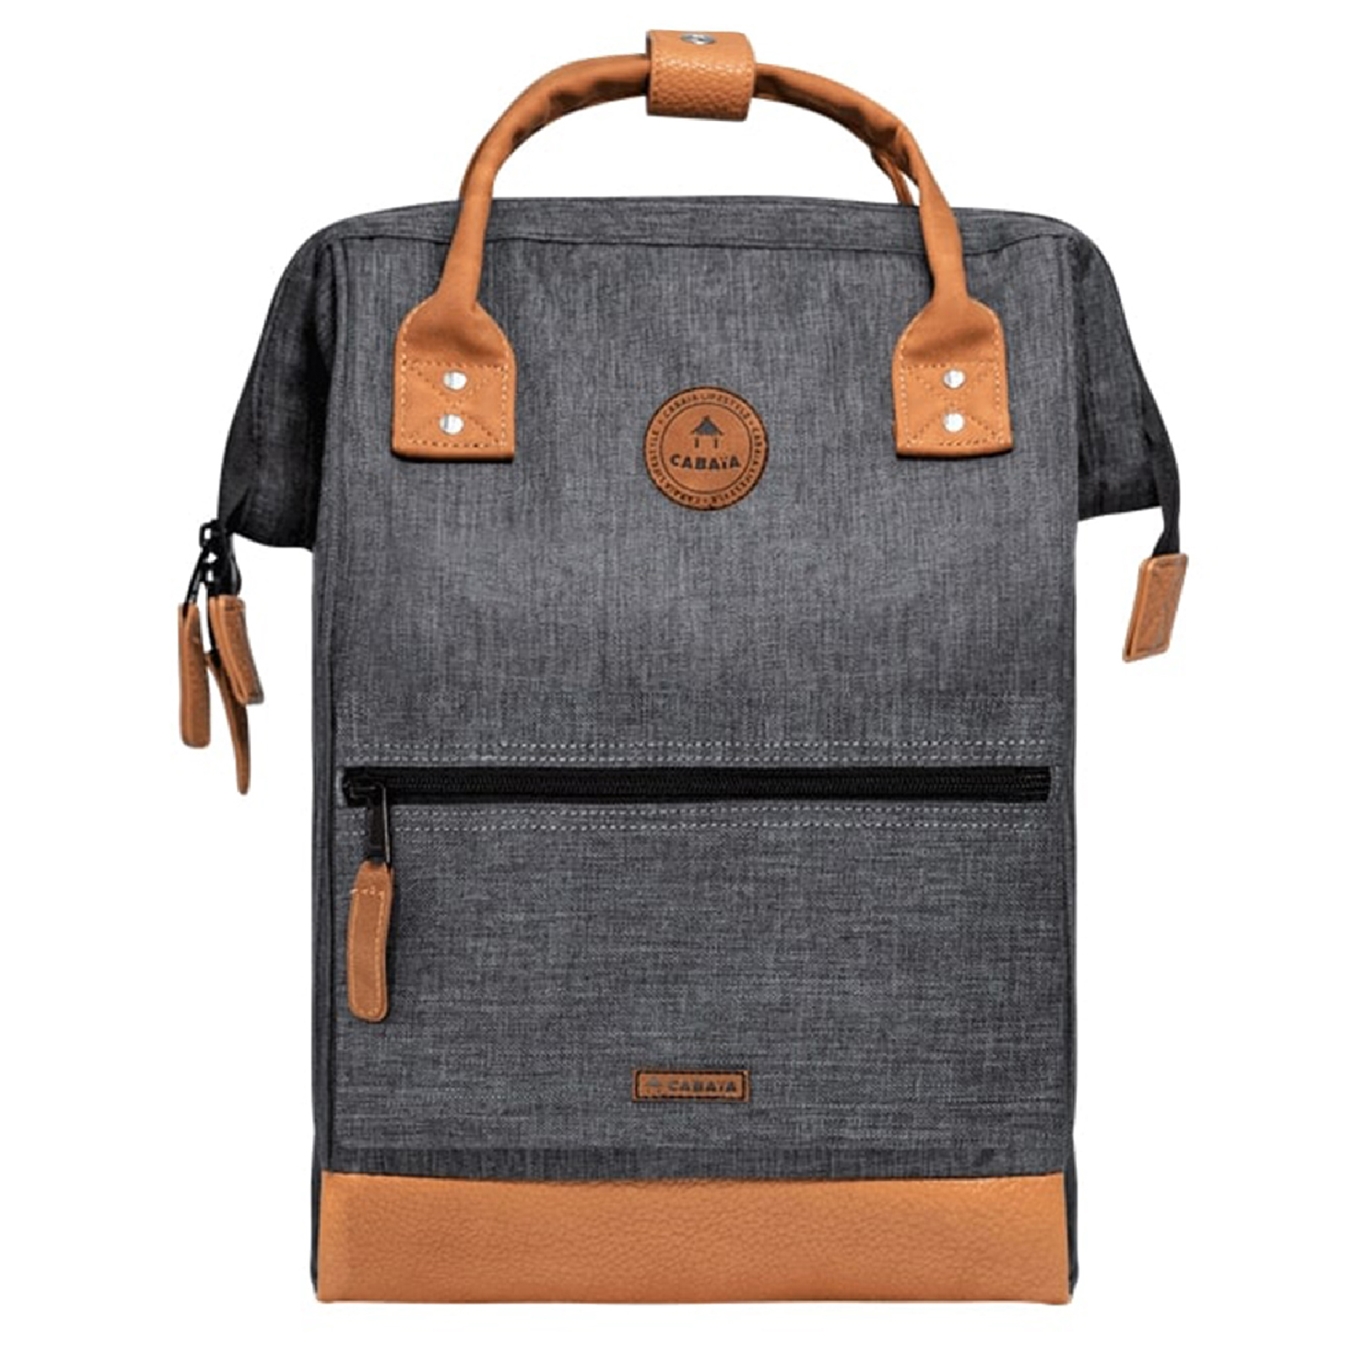 Cabaia Adventurer Medium Bag londres backpack